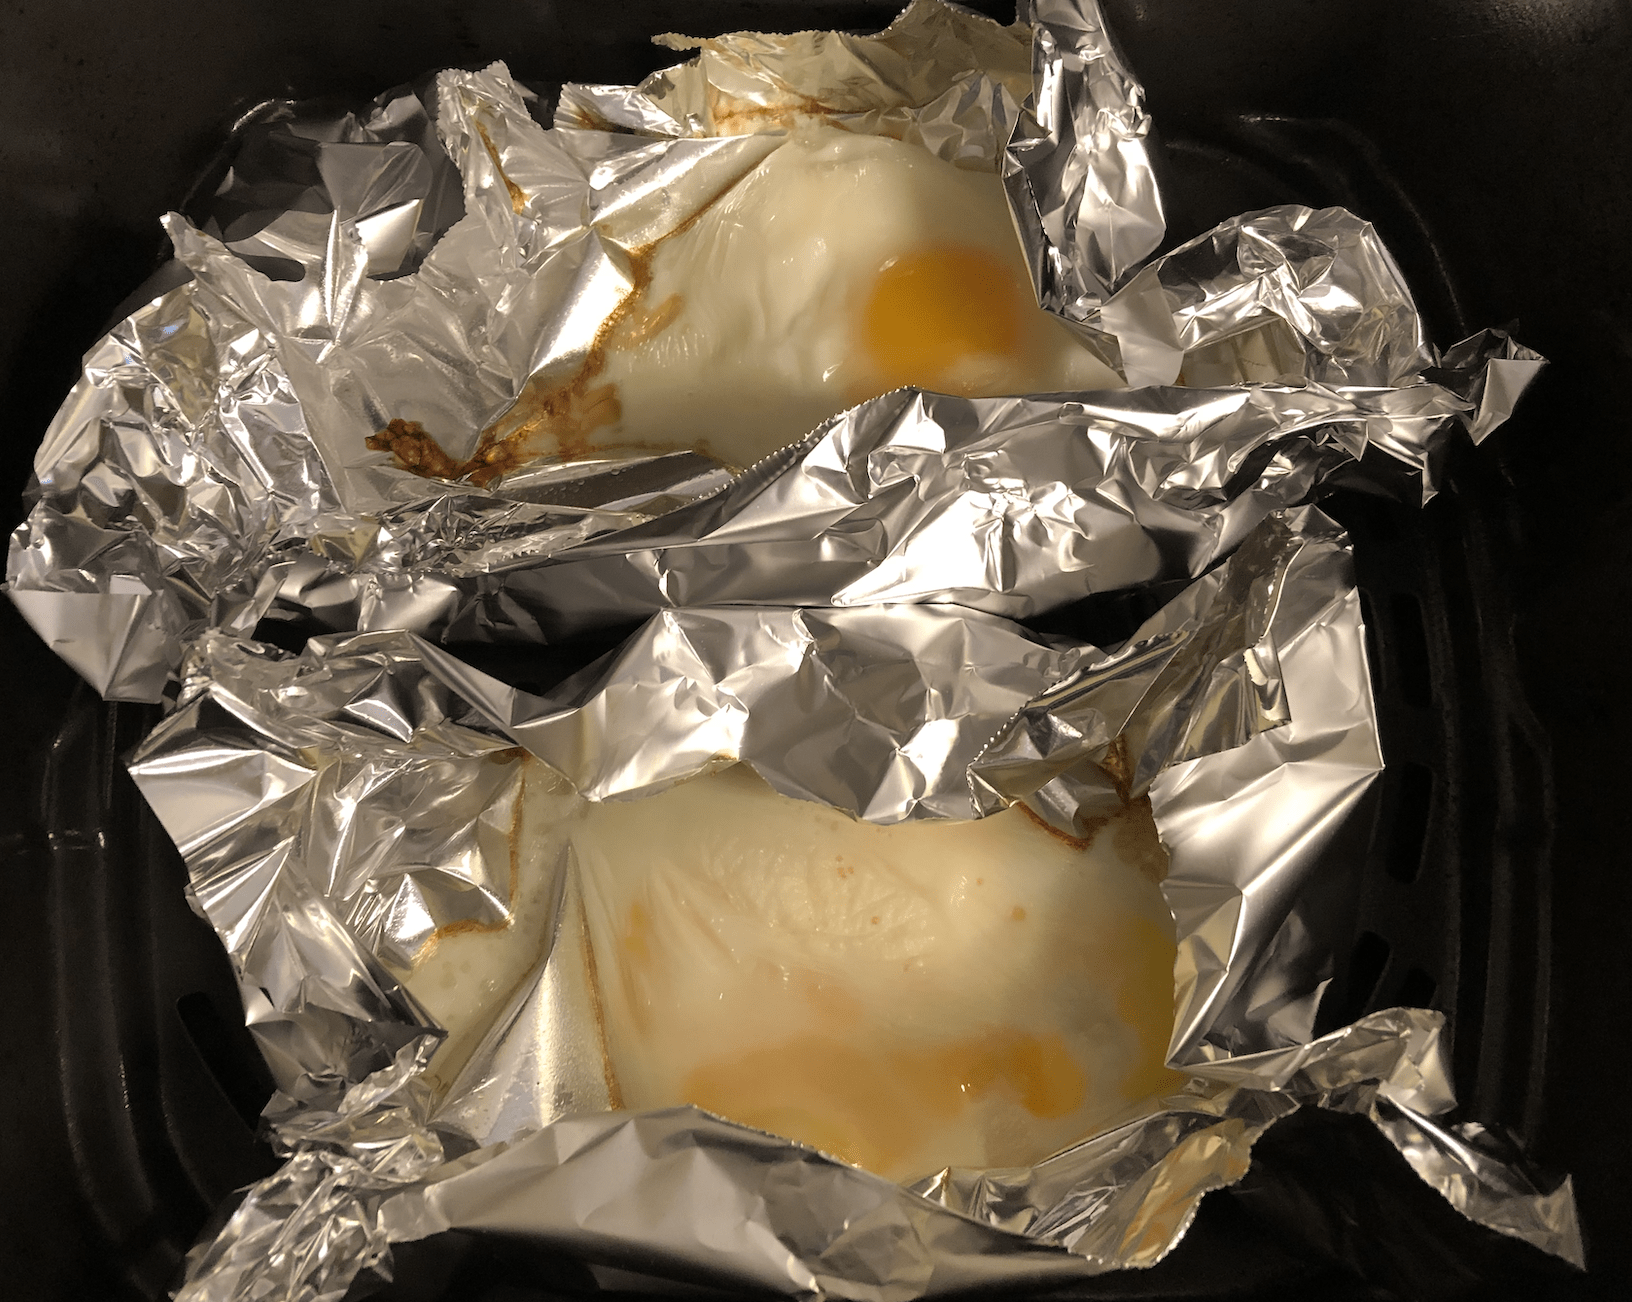 air fried eggs